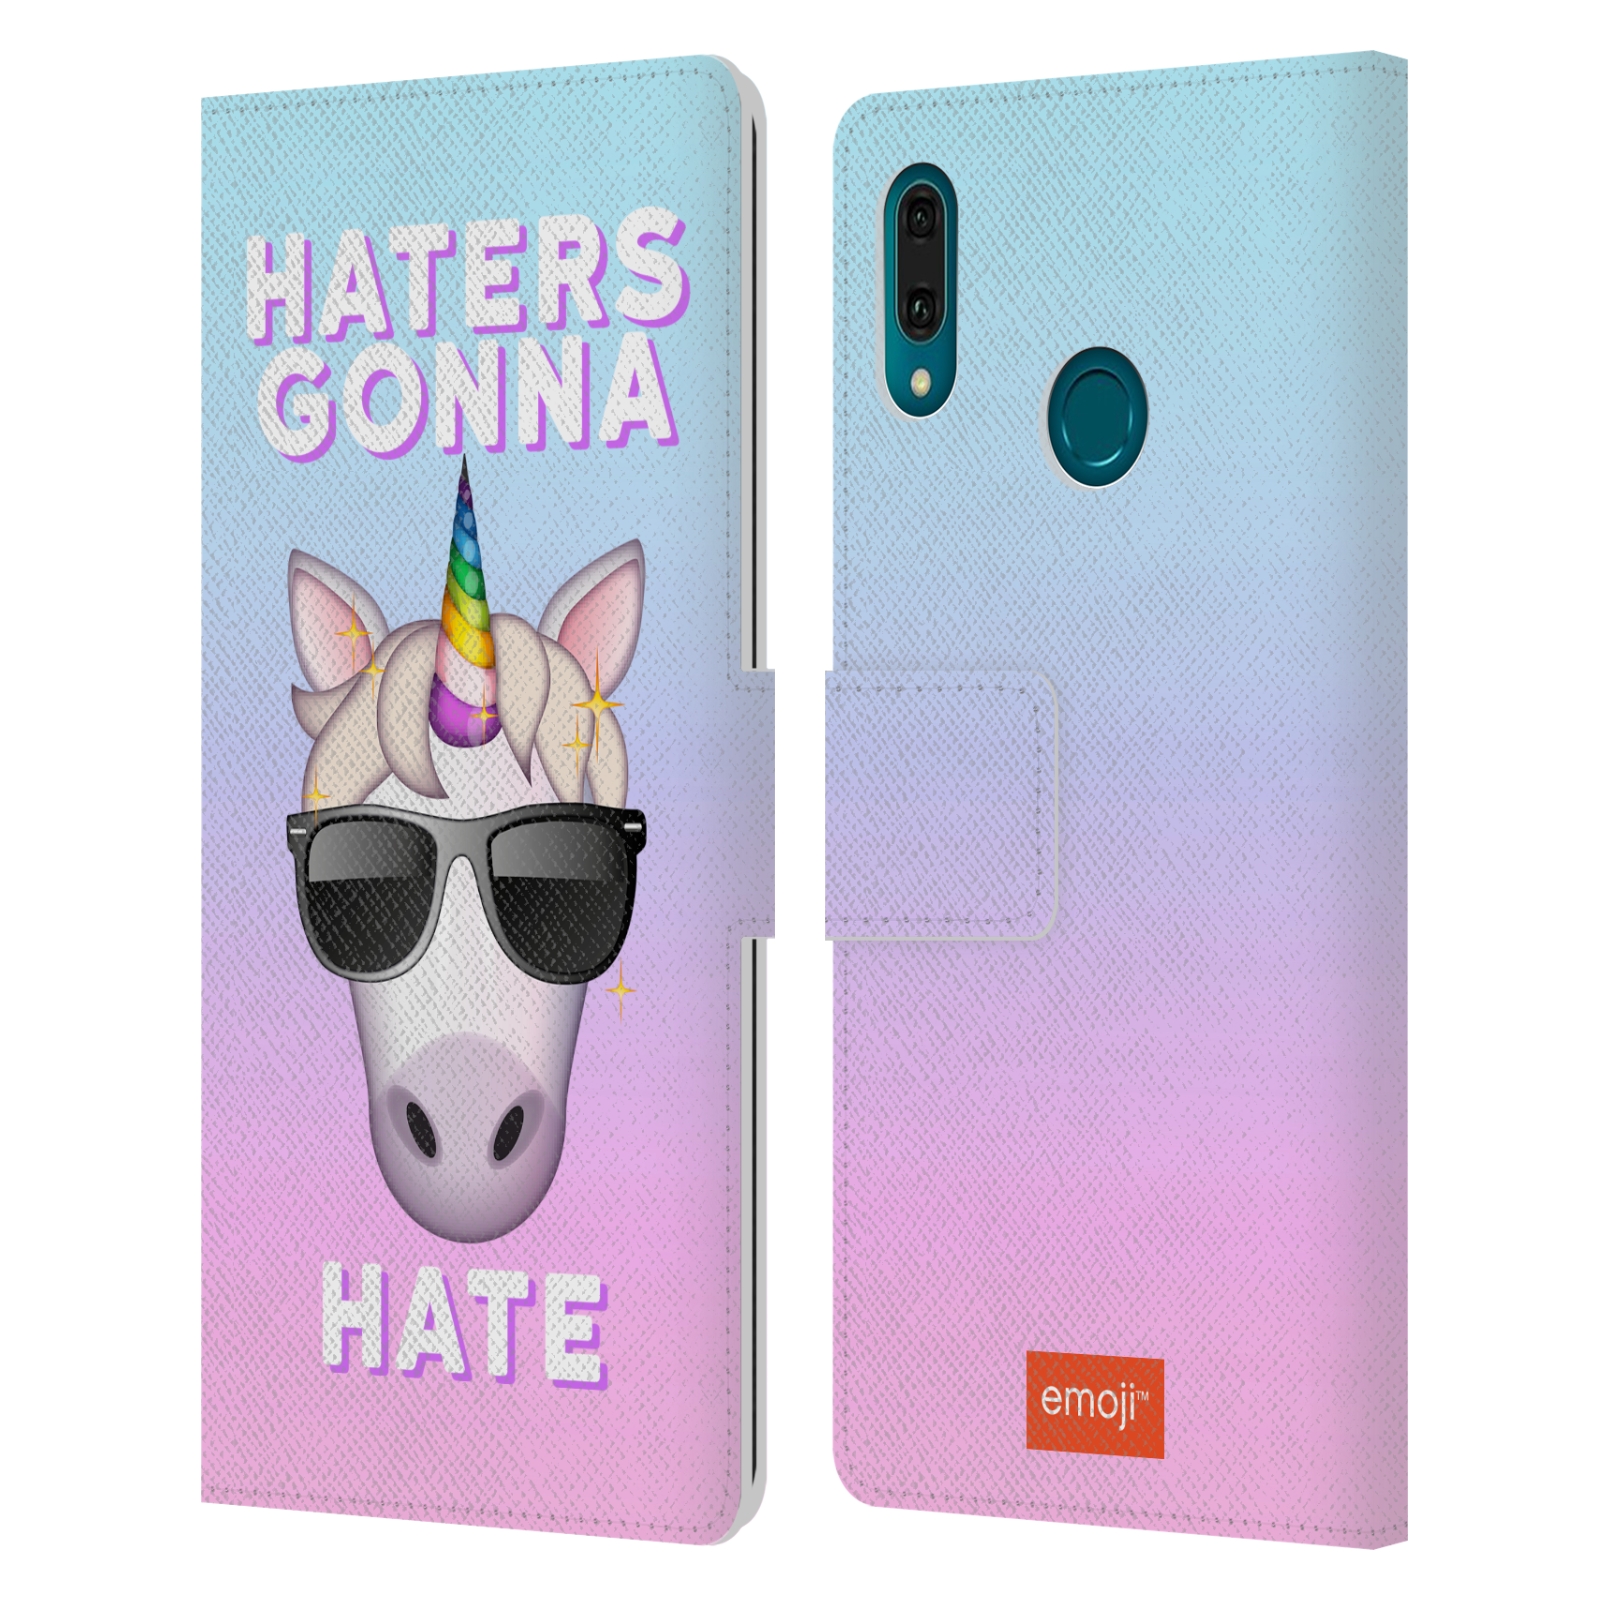 Pouzdro na mobil Huawei Y9 2019 - Head Case - Emoji jednorožec s brýlemi